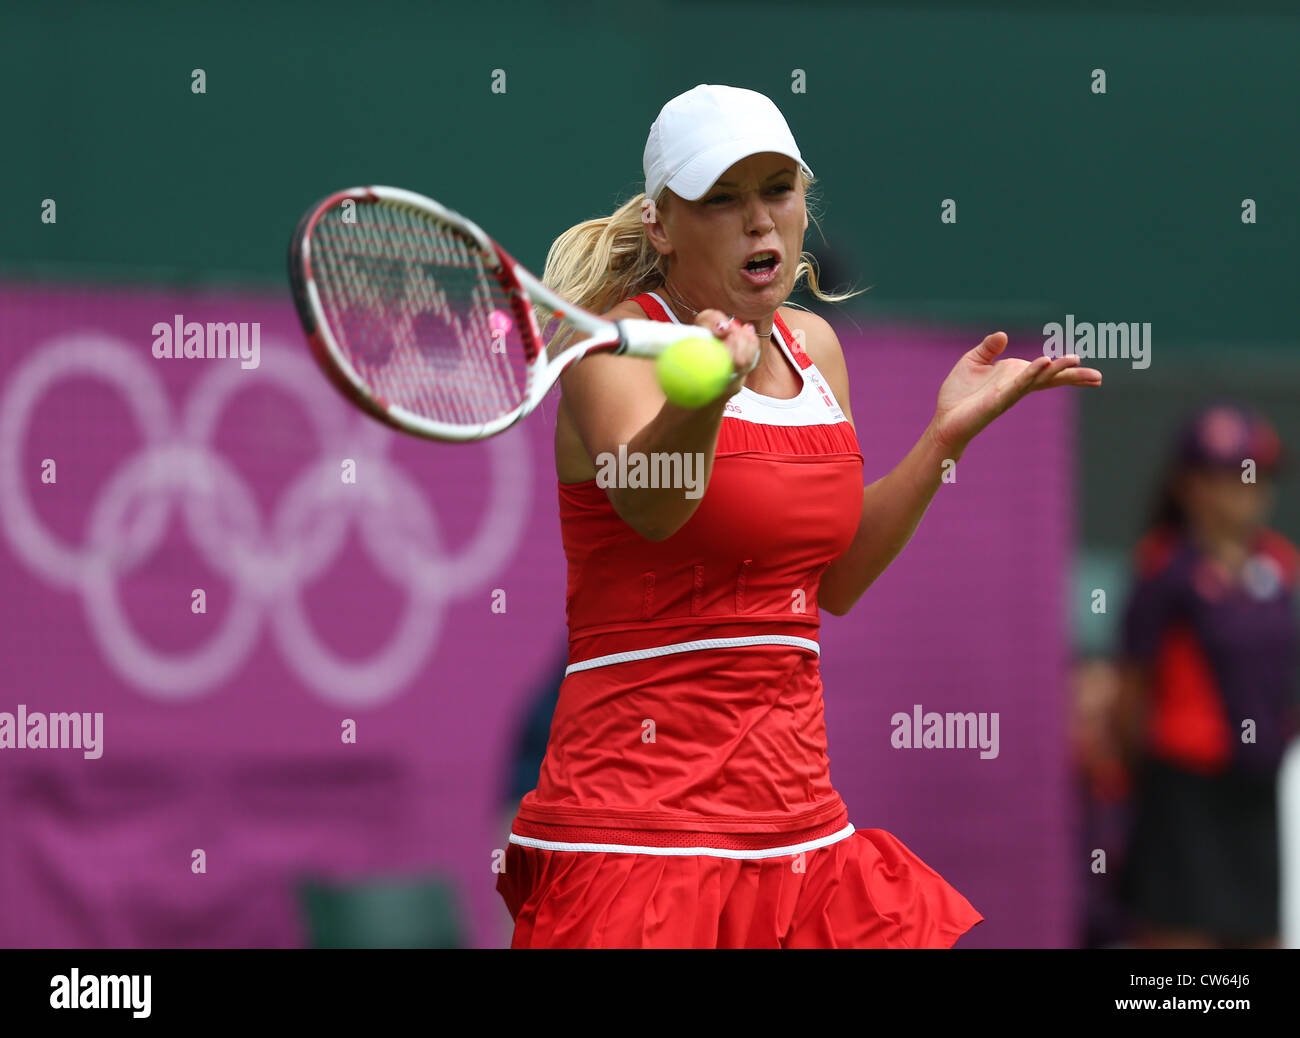 Caroline Wozniacki (DEN) en action à Wimbledon pendant les Jeux Olympiques de 2012 Banque D'Images